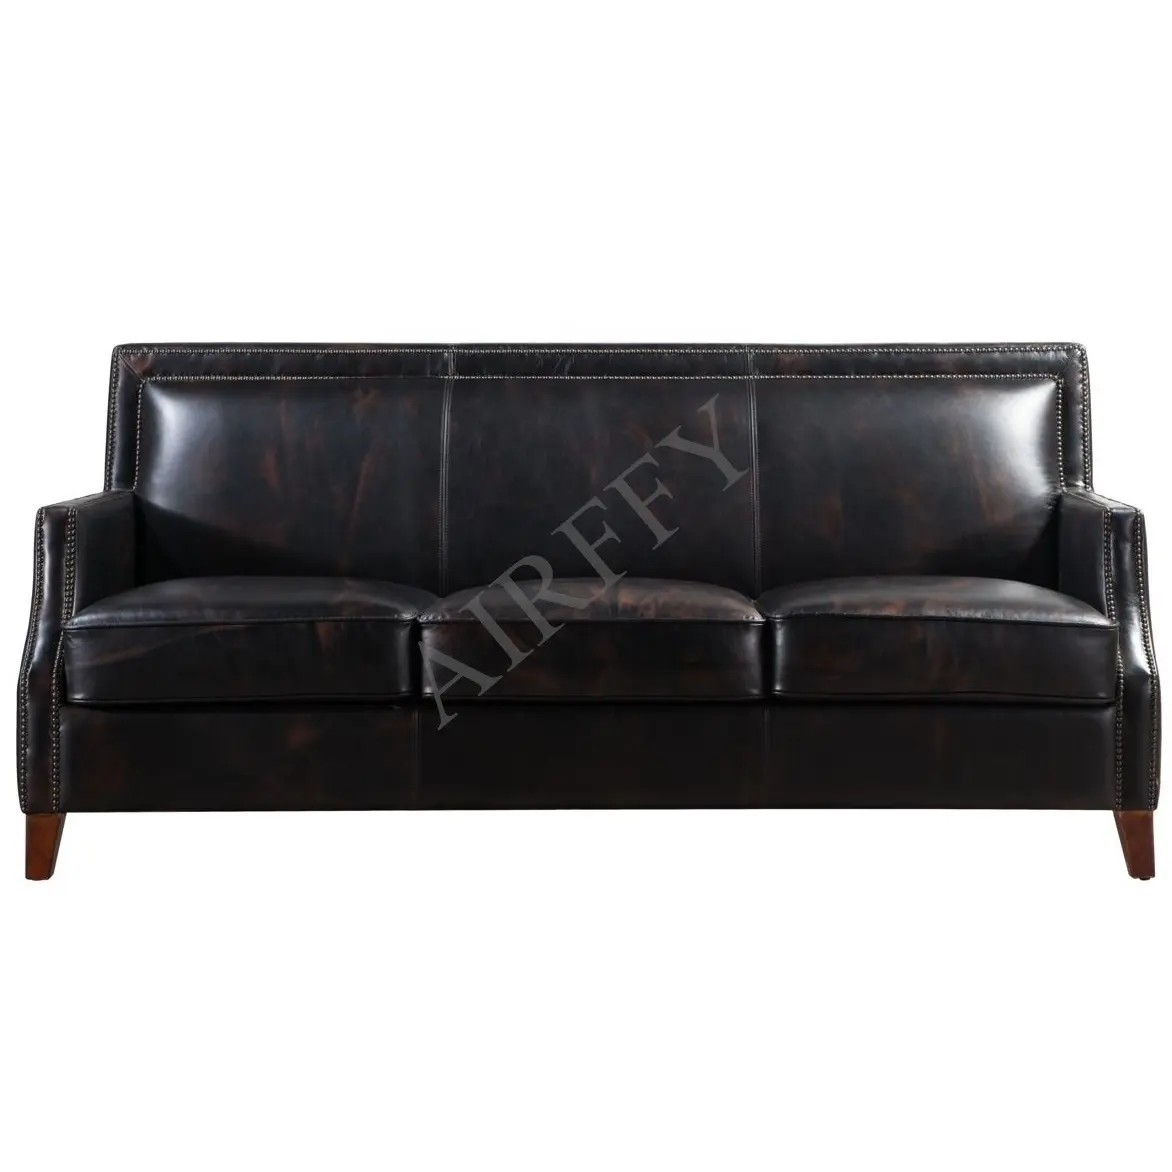 AIRFFY OEM/ODM заводской классический винтажный черный кожаный диван для виллы, гостиной, Клубная мебель для отеля